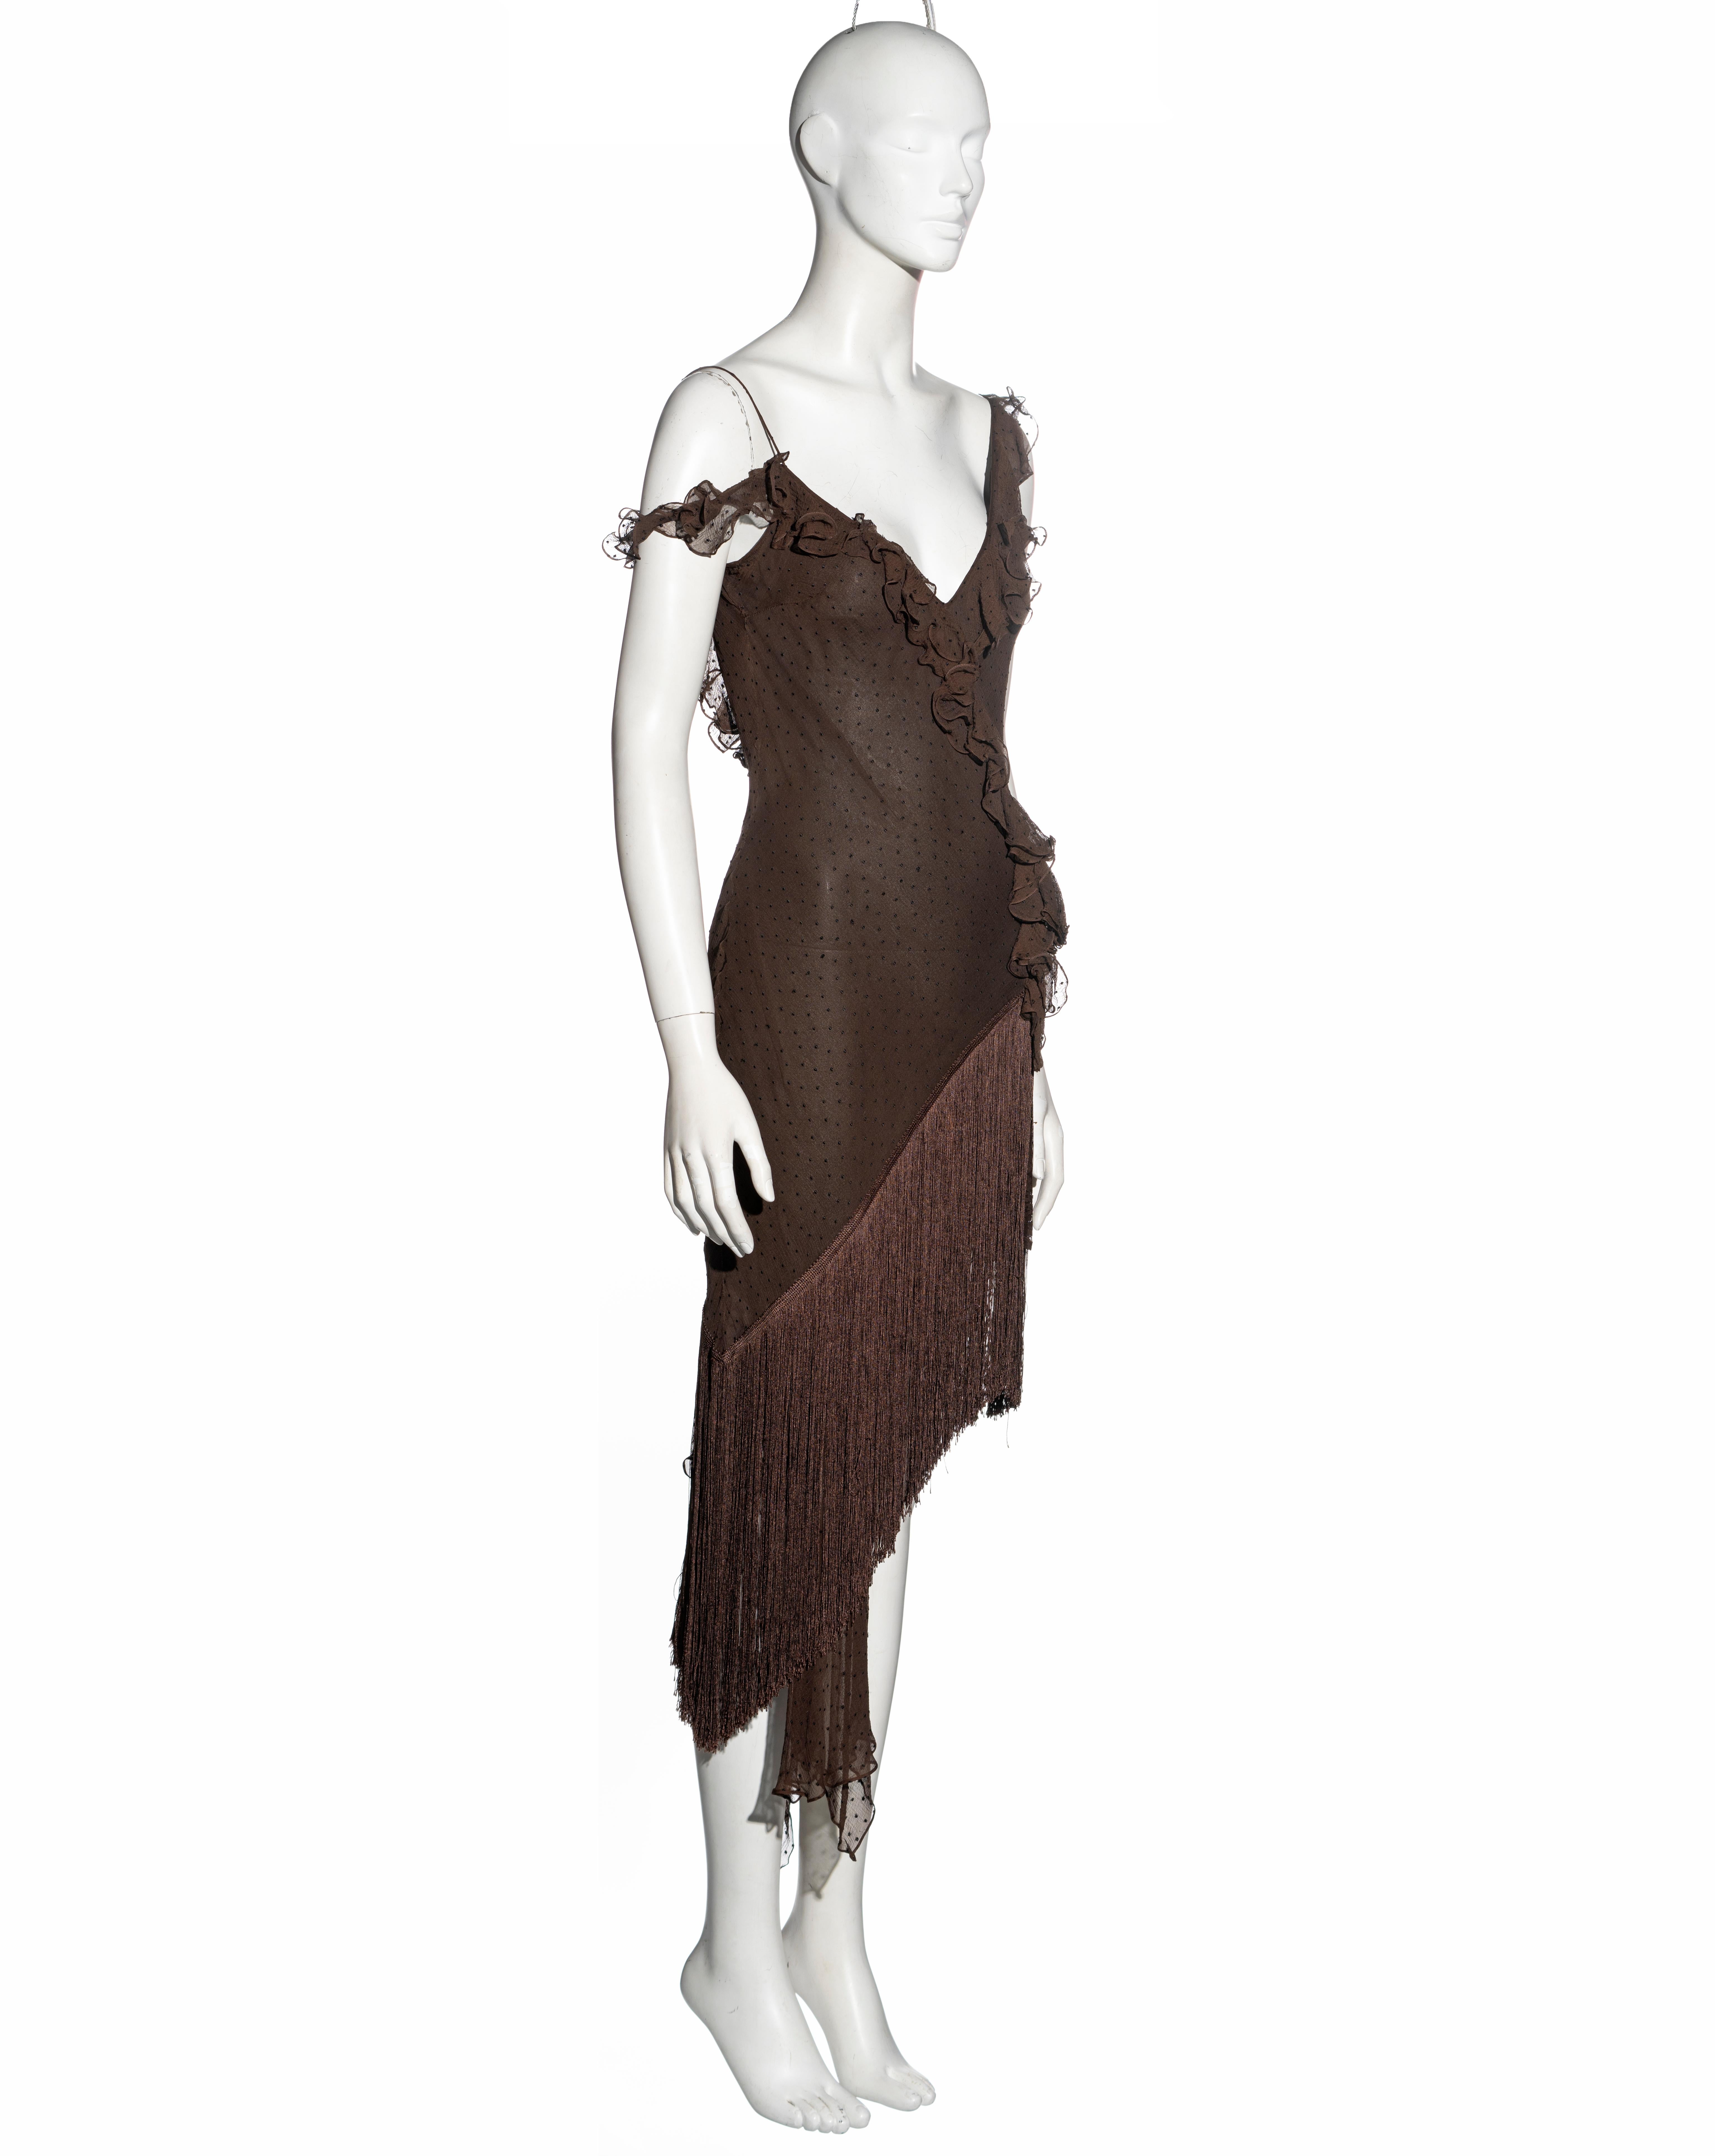 Women's Christian Dior by John Galliano brown silk chiffon bias cut dress, fw 2000